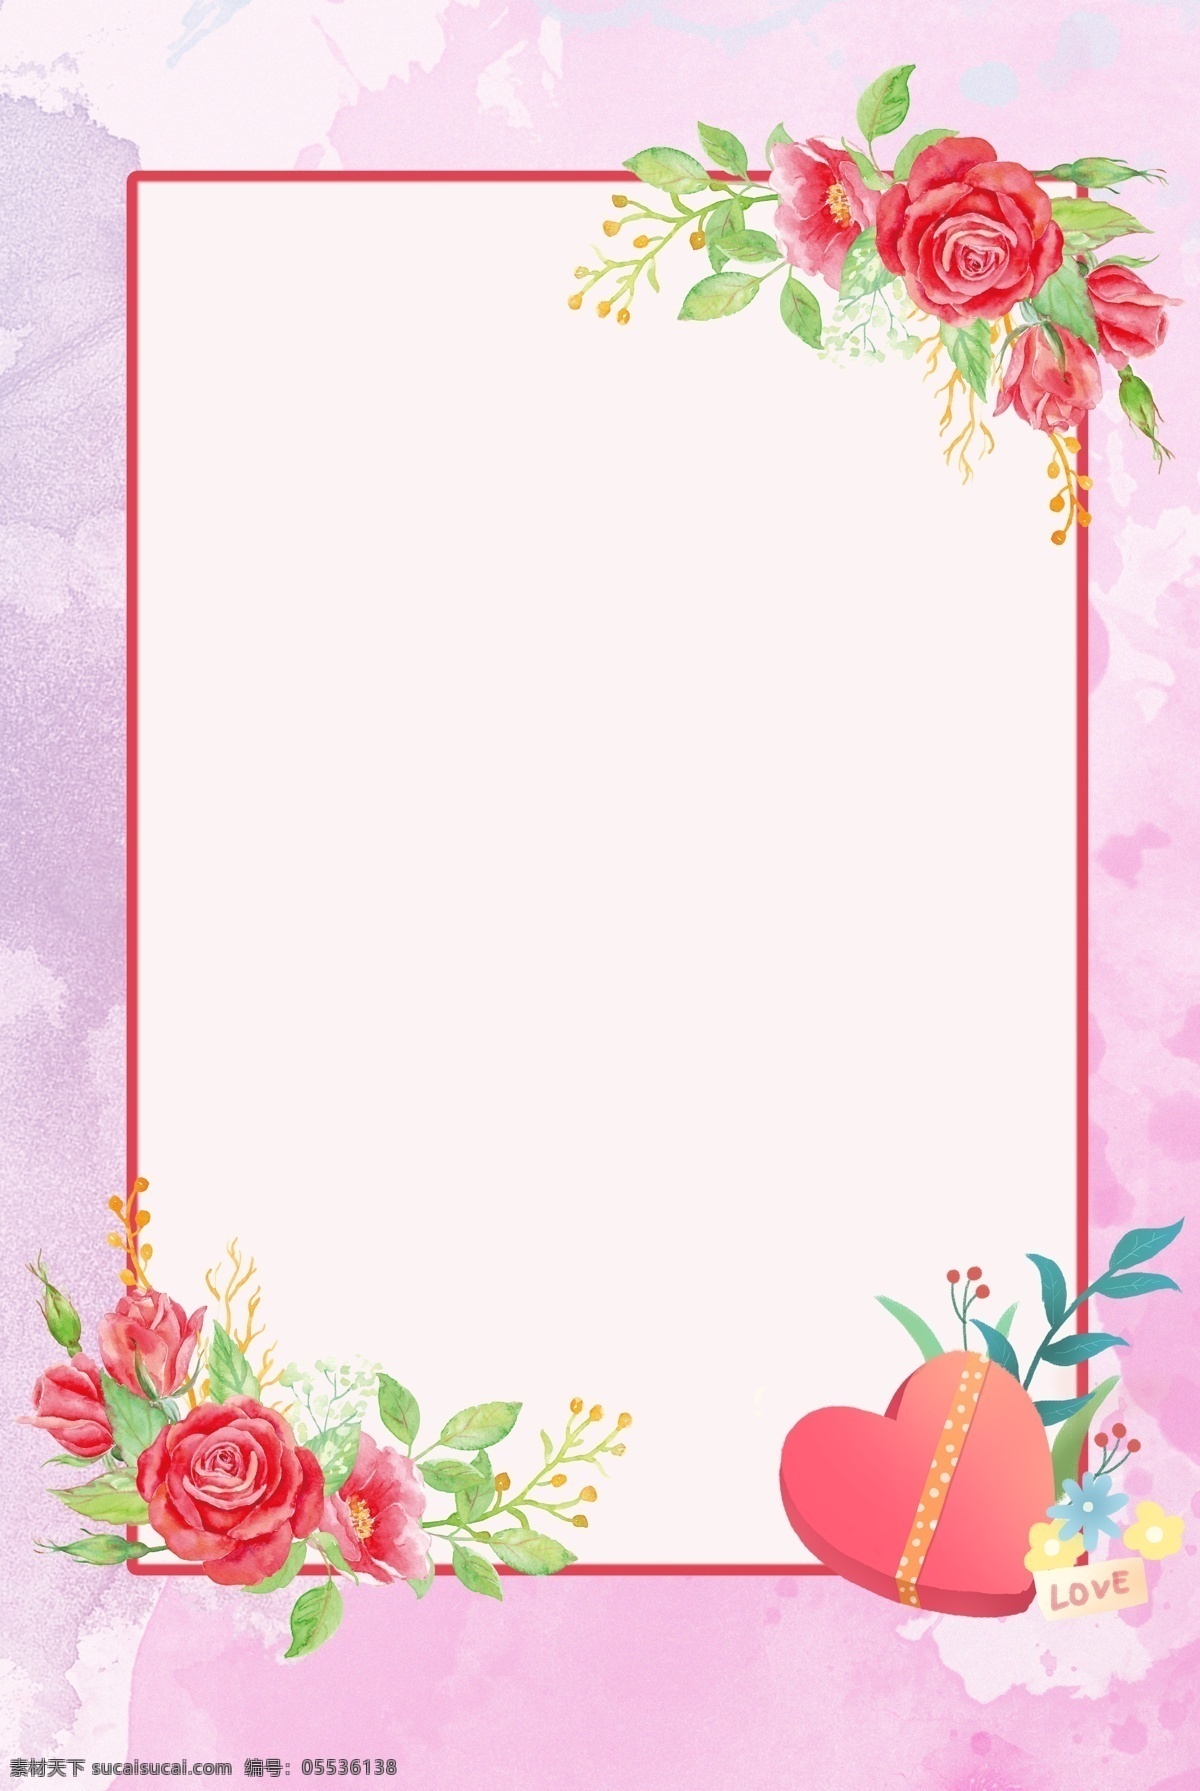 唯美 七夕 粉色 花朵 背景 爱情 爱 爱心 边框 手绘 水彩 情感 节日